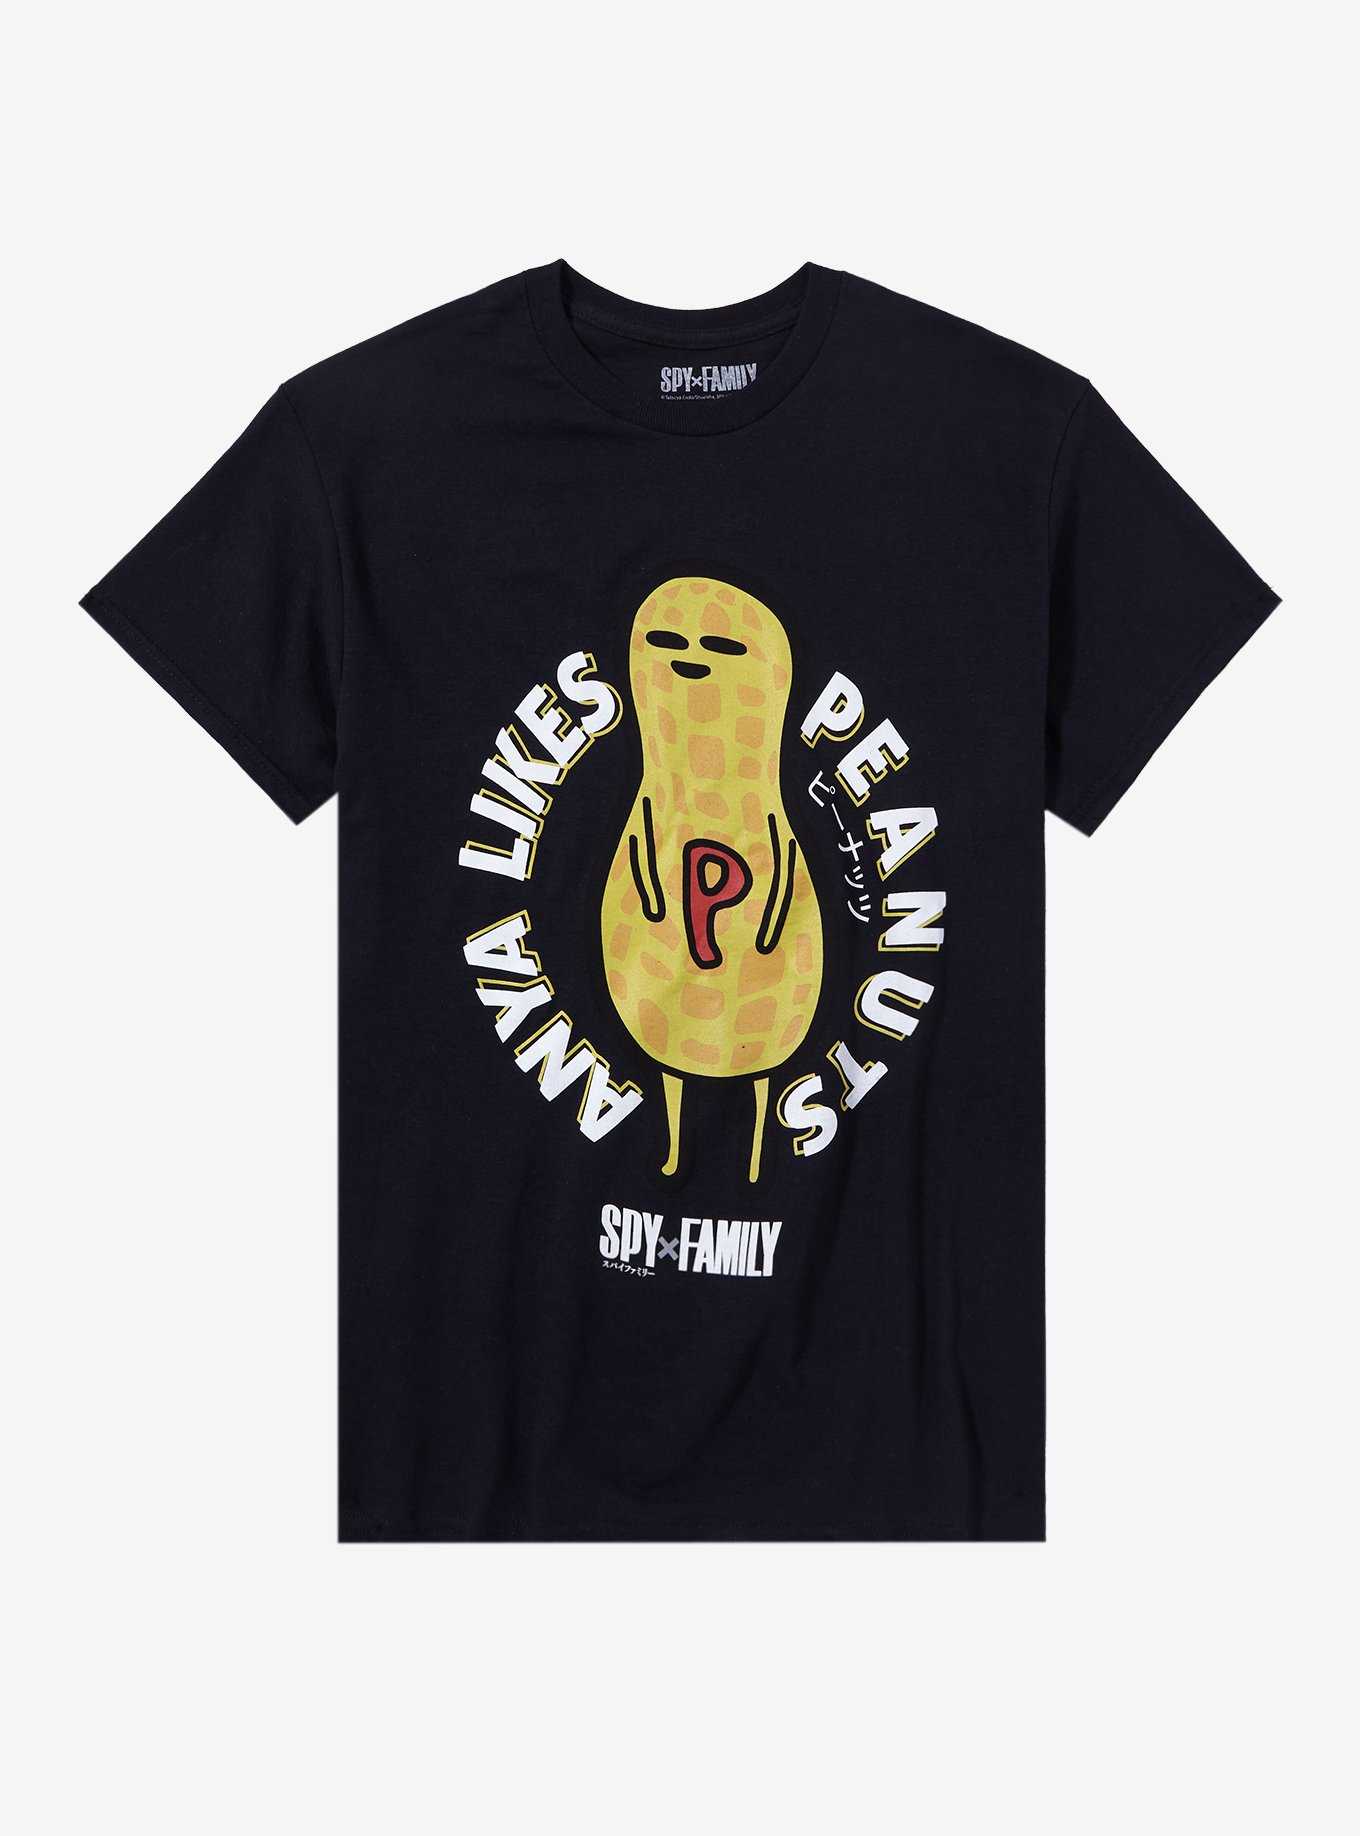 Spy X Family Anya Likes Peanuts Mascot T-Shirt, , hi-res